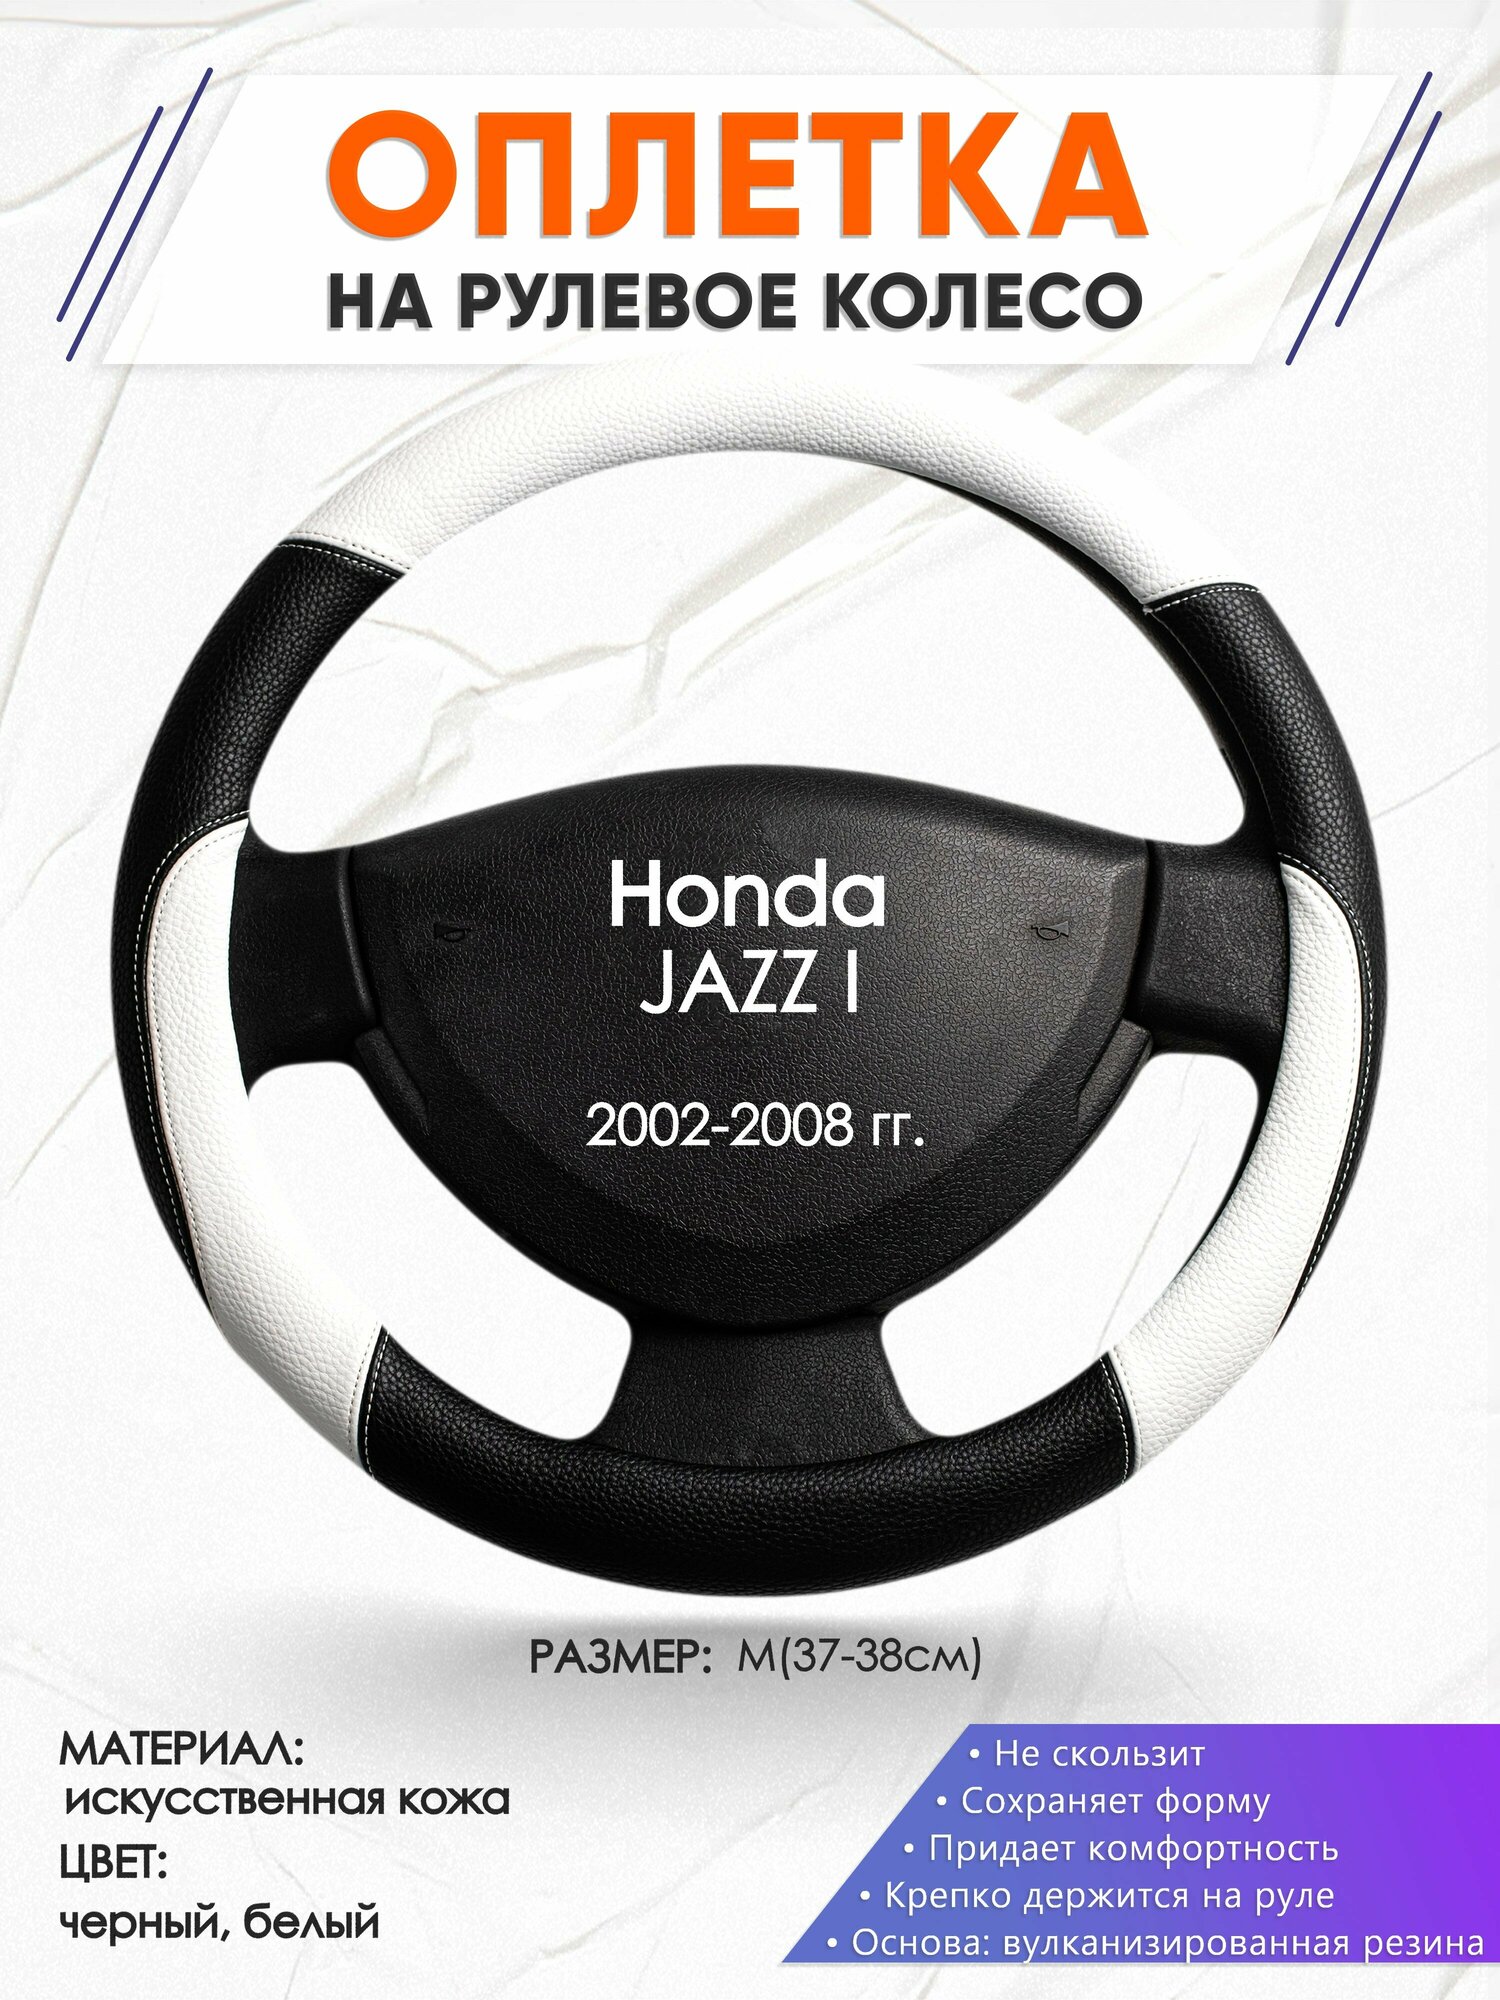 Оплетка наруль для Honda JAZZ 1(Хонда Джаз 1) 2002-2008 годов выпуска размер M(37-38см) Искусственная кожа 67